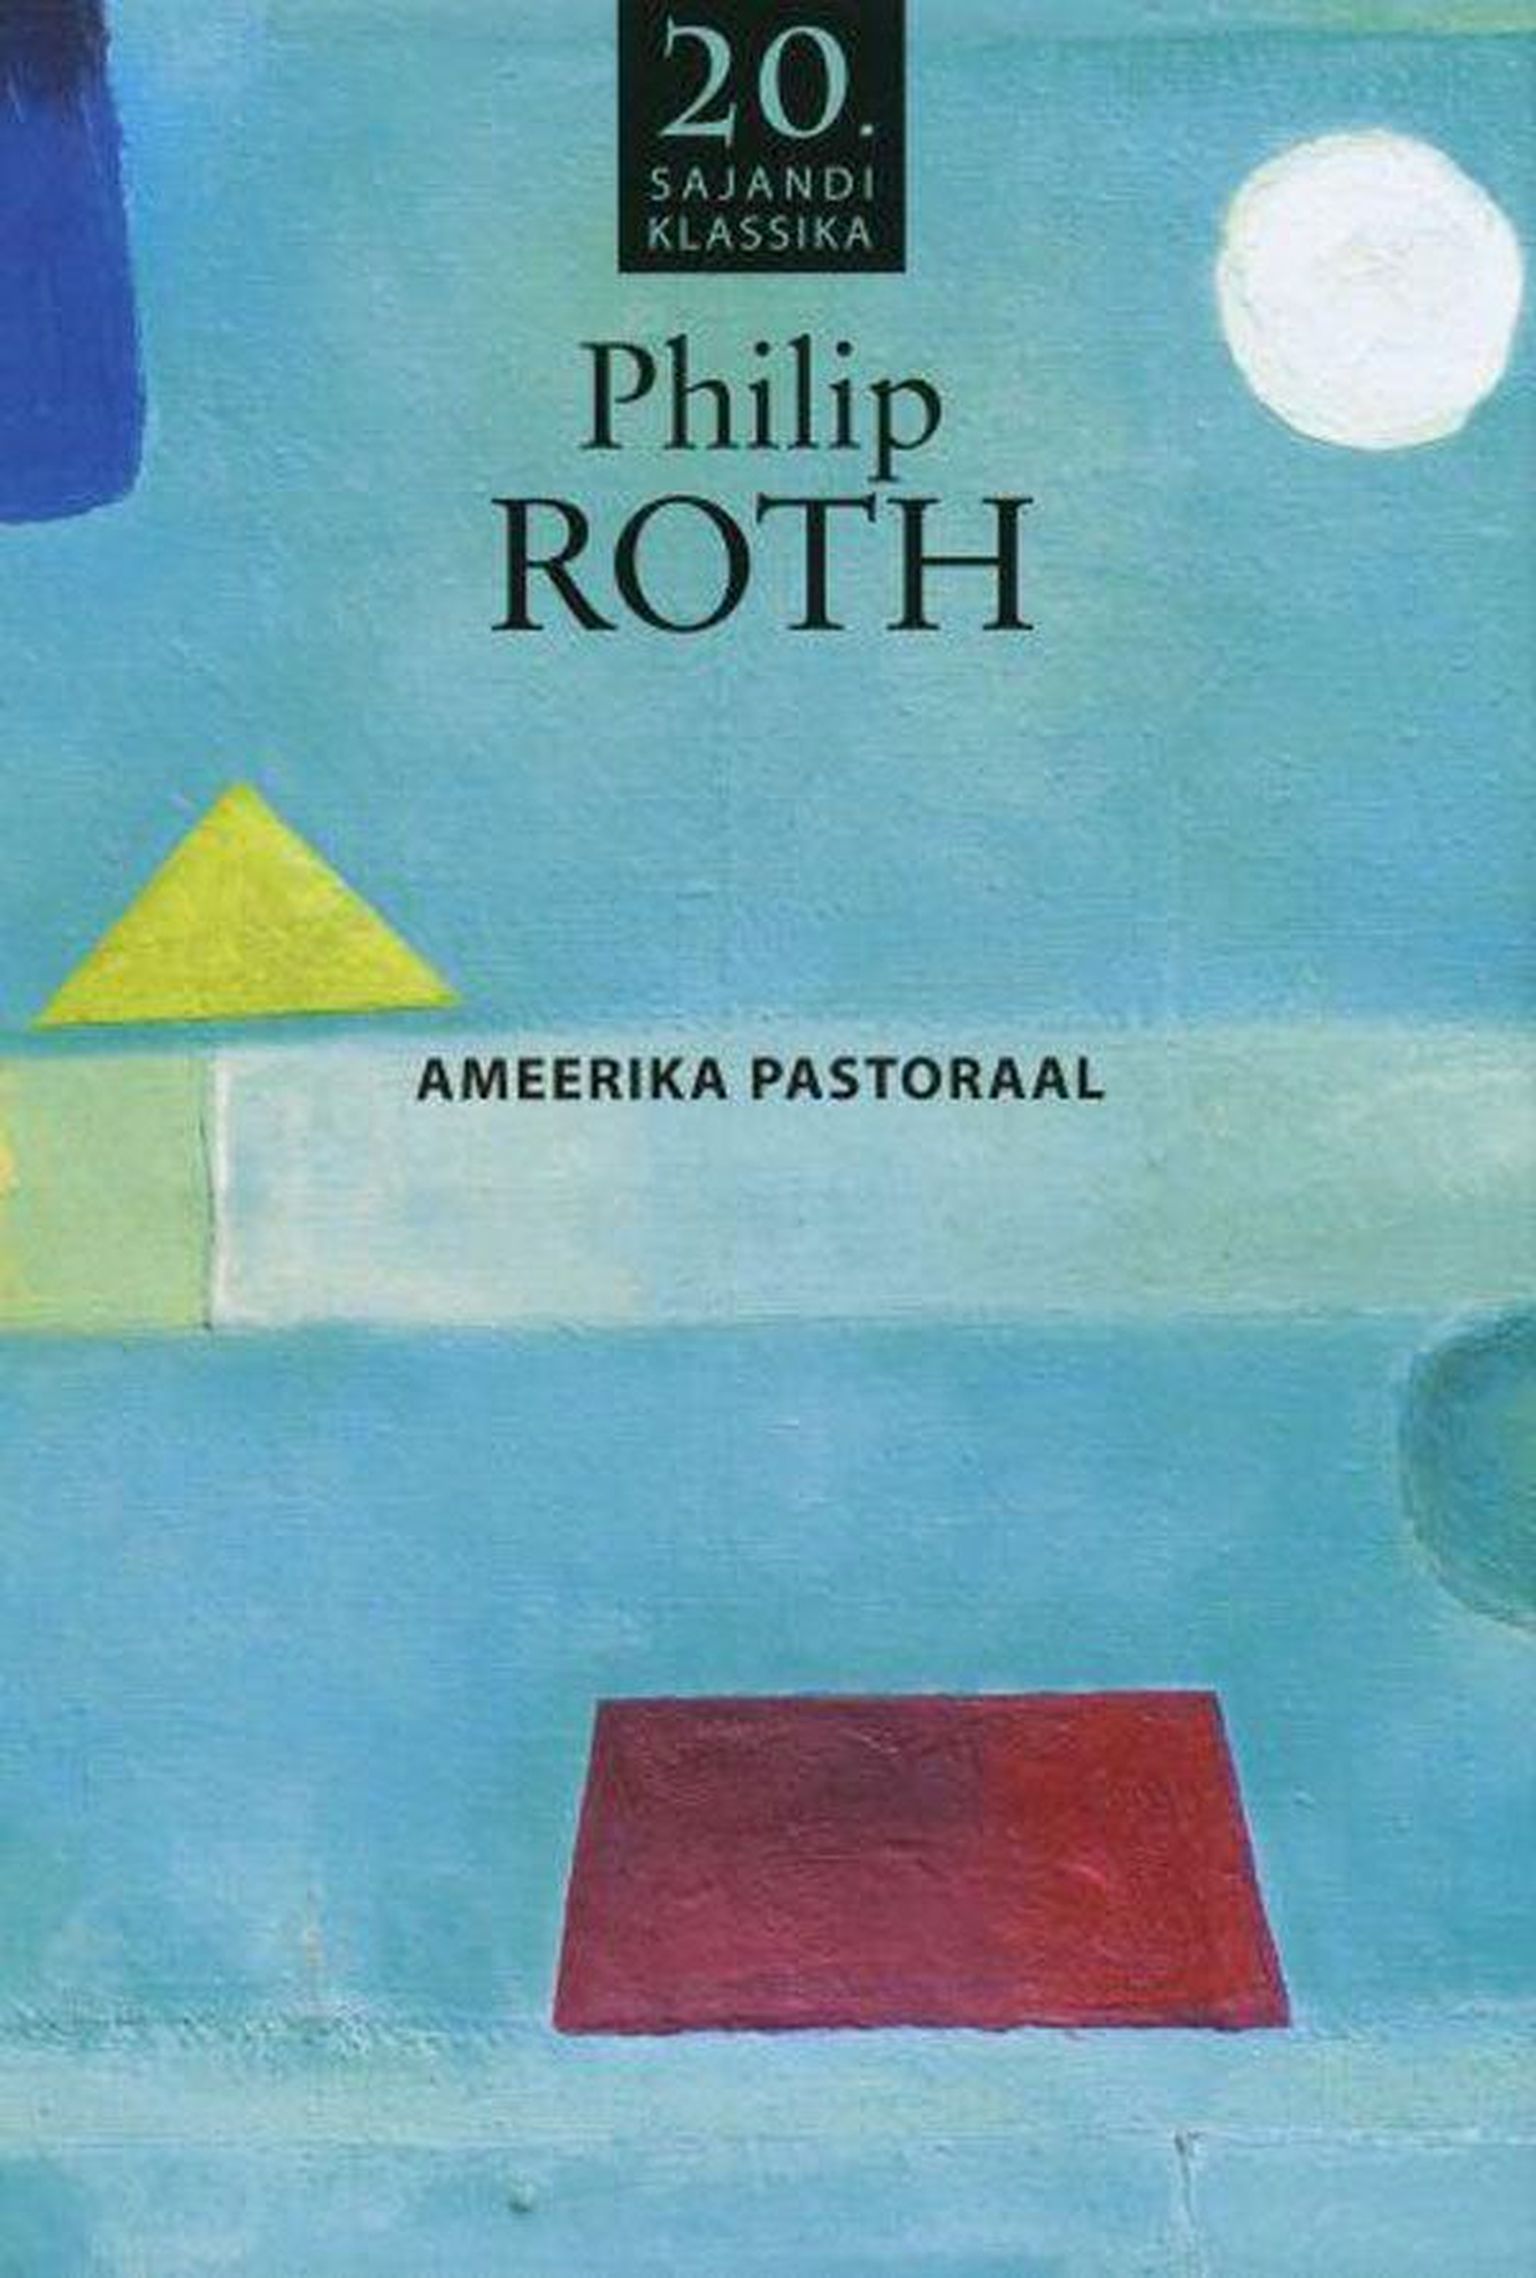 Raamat
Philip Roth
«Ameerika pastoraal»
Tõlkija Kristjan Jaak Kangur
Varrak
448 lk